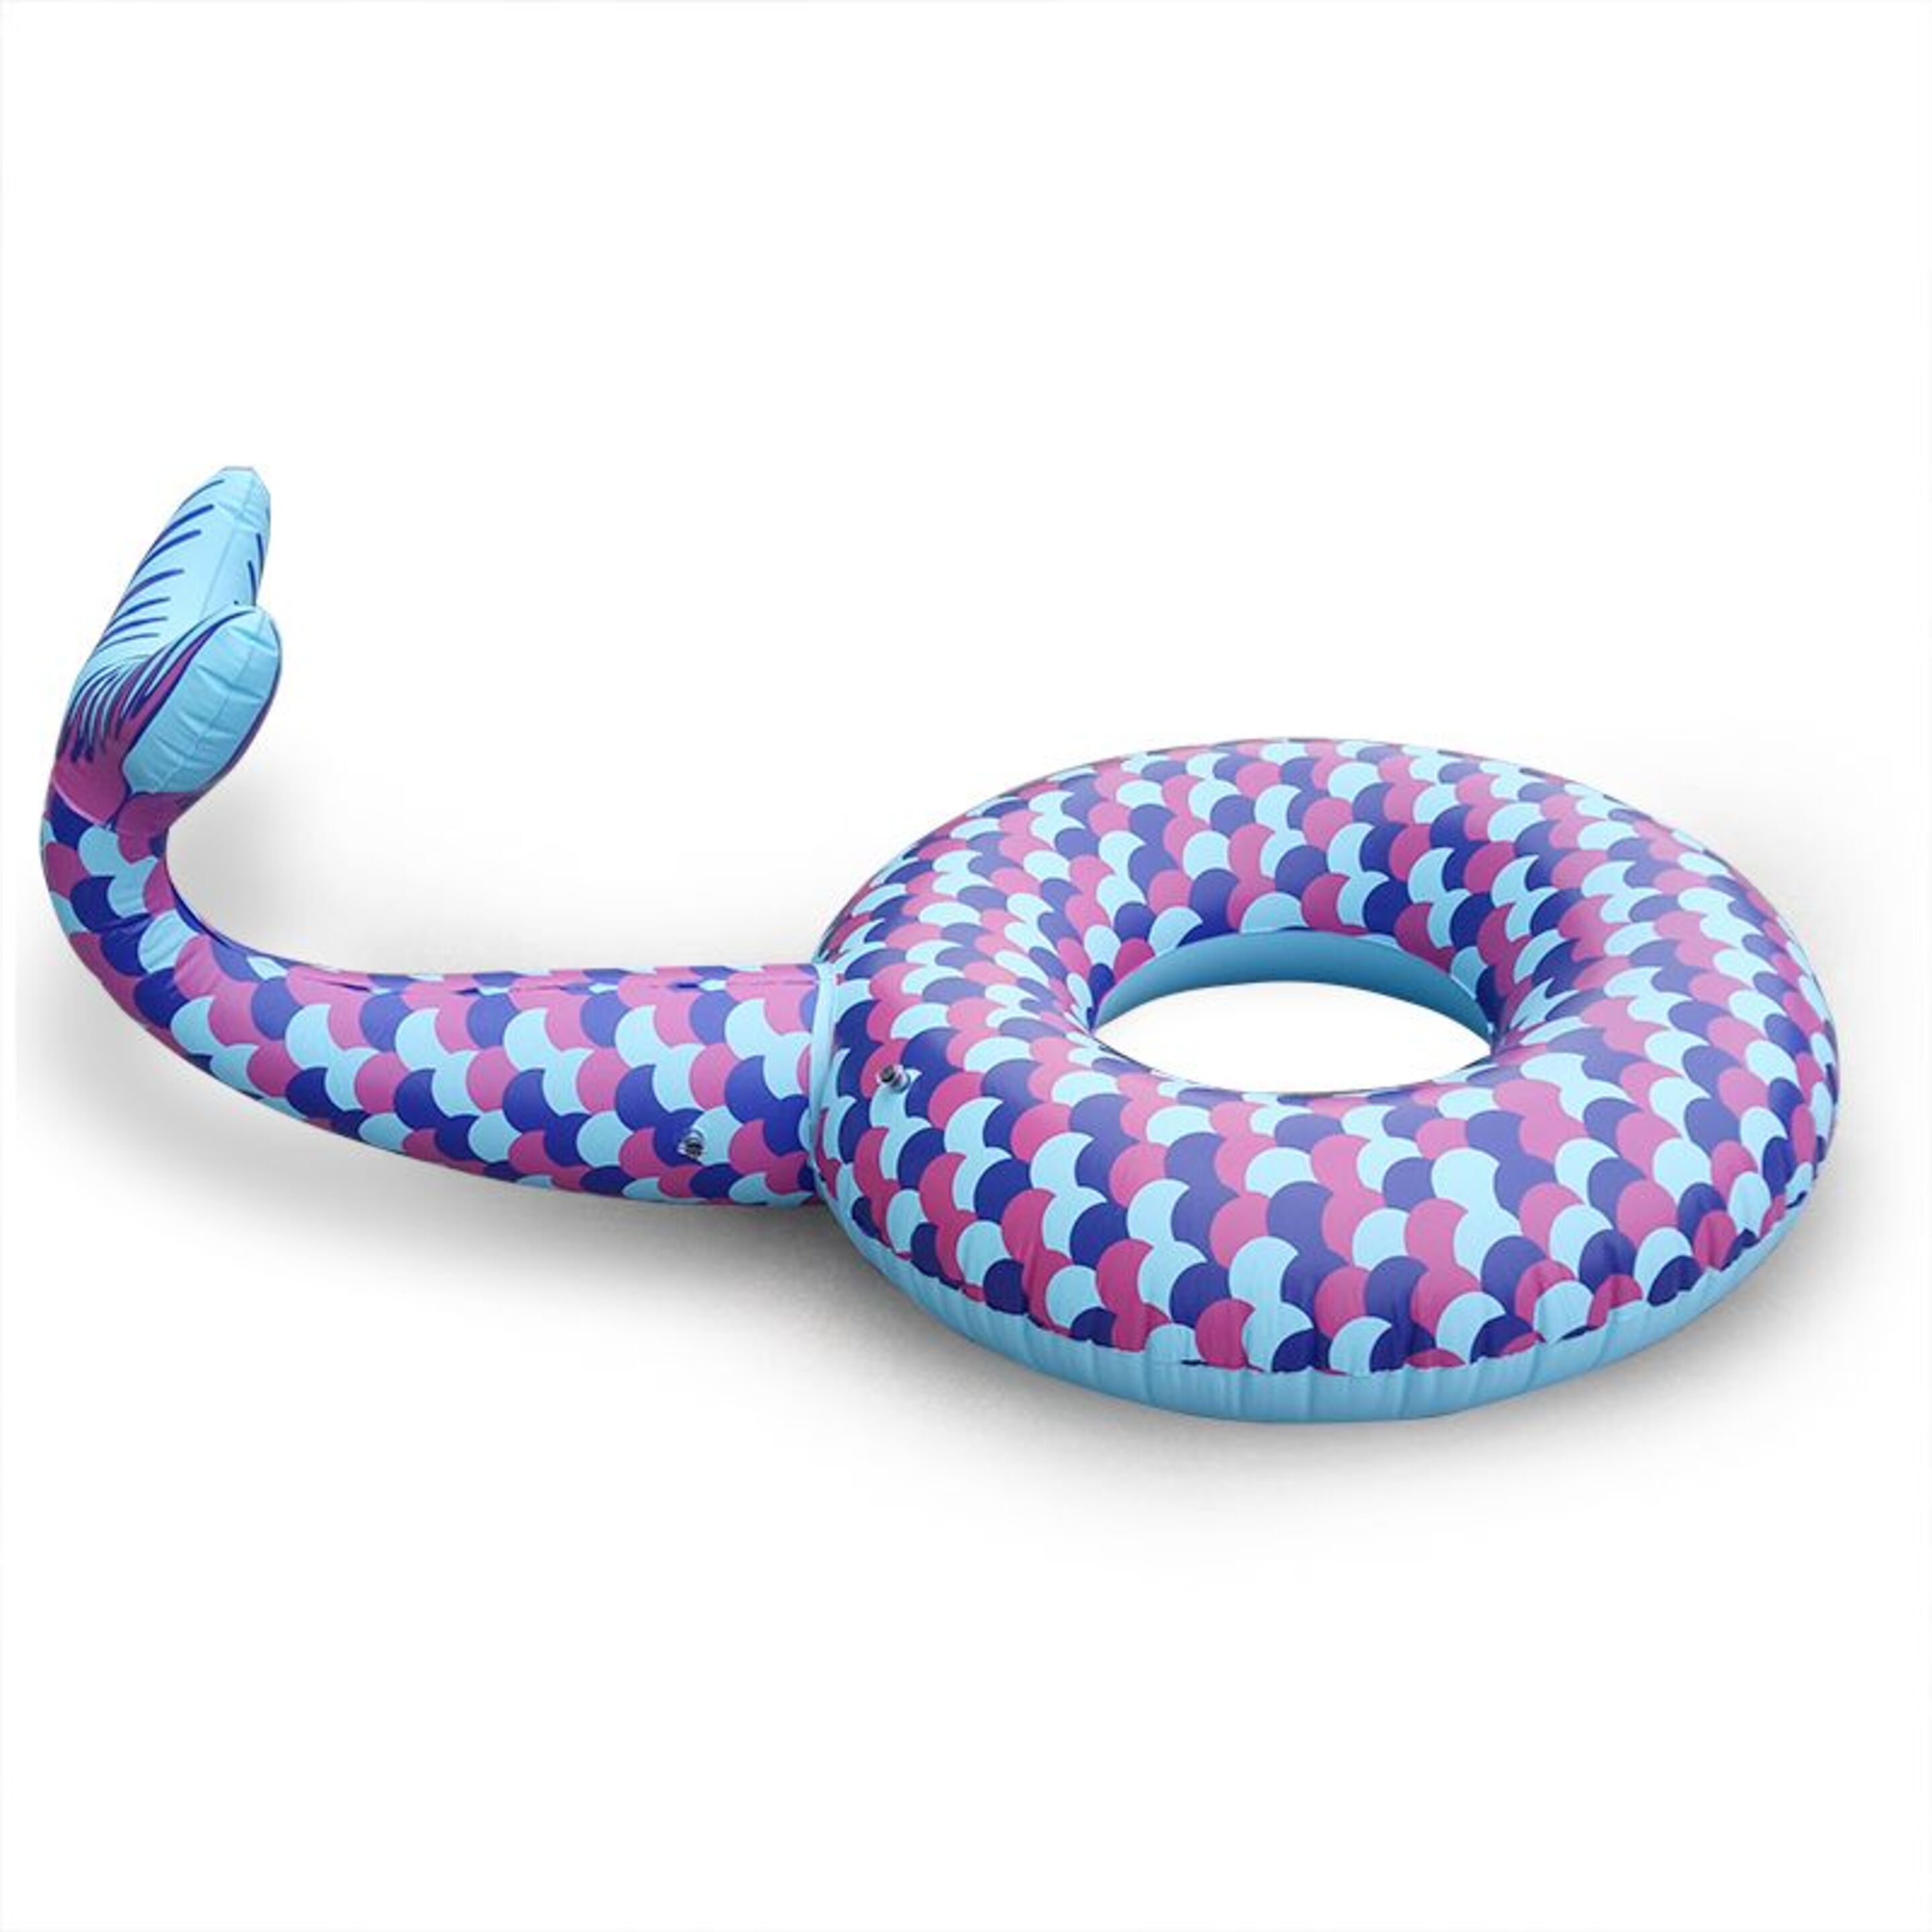 Colchoneta Hinchable Anillo Mermaid Tail - azul - 